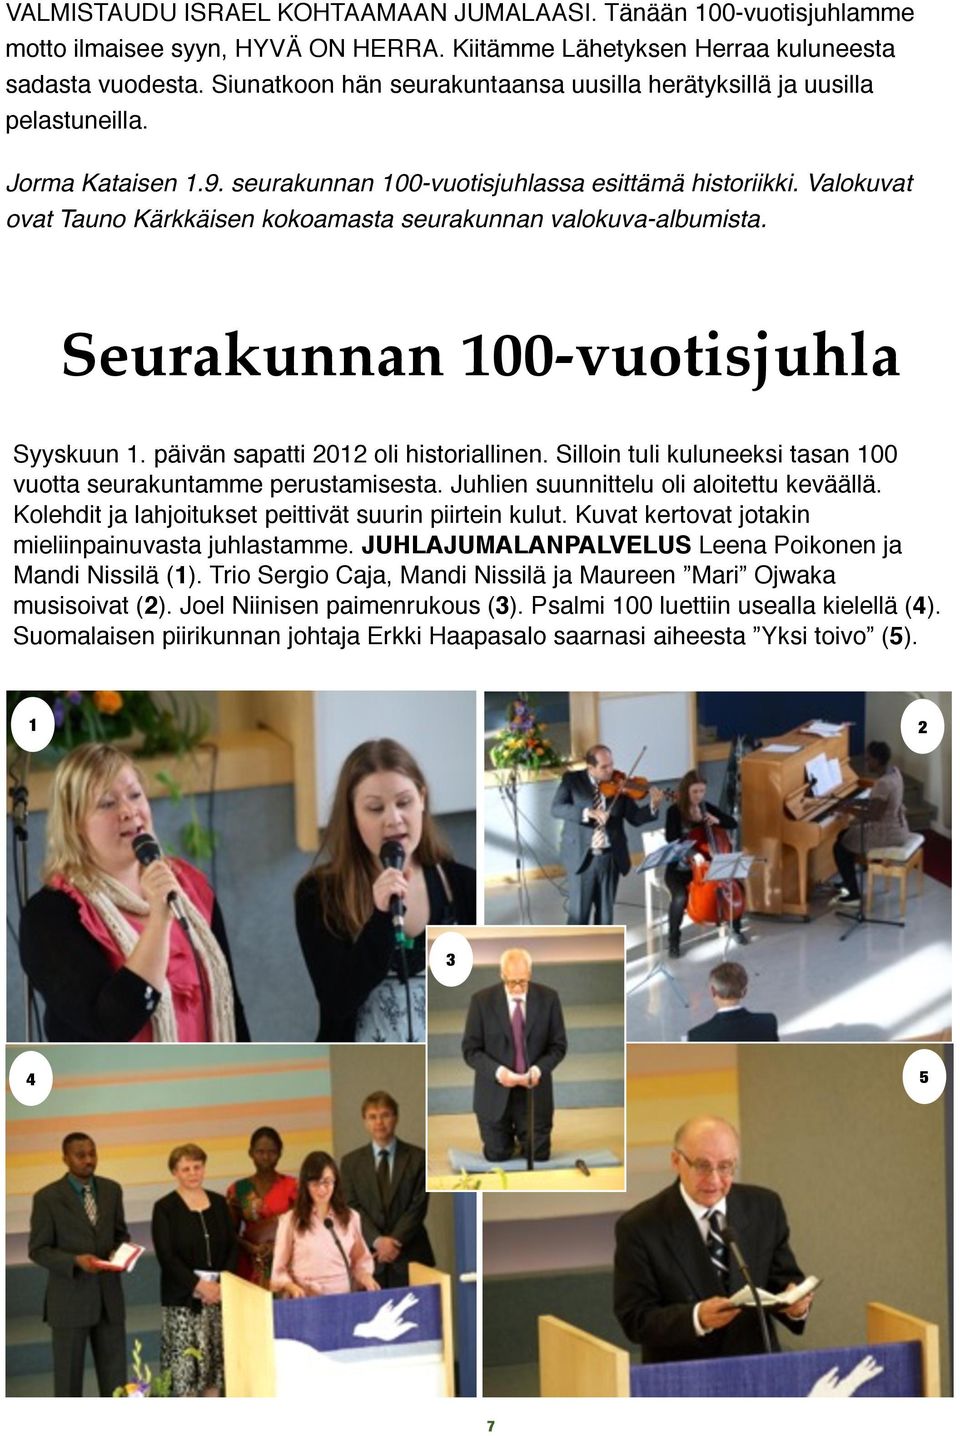 Valokuvat ovat Tauno Kärkkäisen kokoamasta seurakunnan valokuva-albumista. Seurakunnan 100-vuotisjuhla Syyskuun 1. päivän sapatti 2012 oli historiallinen.